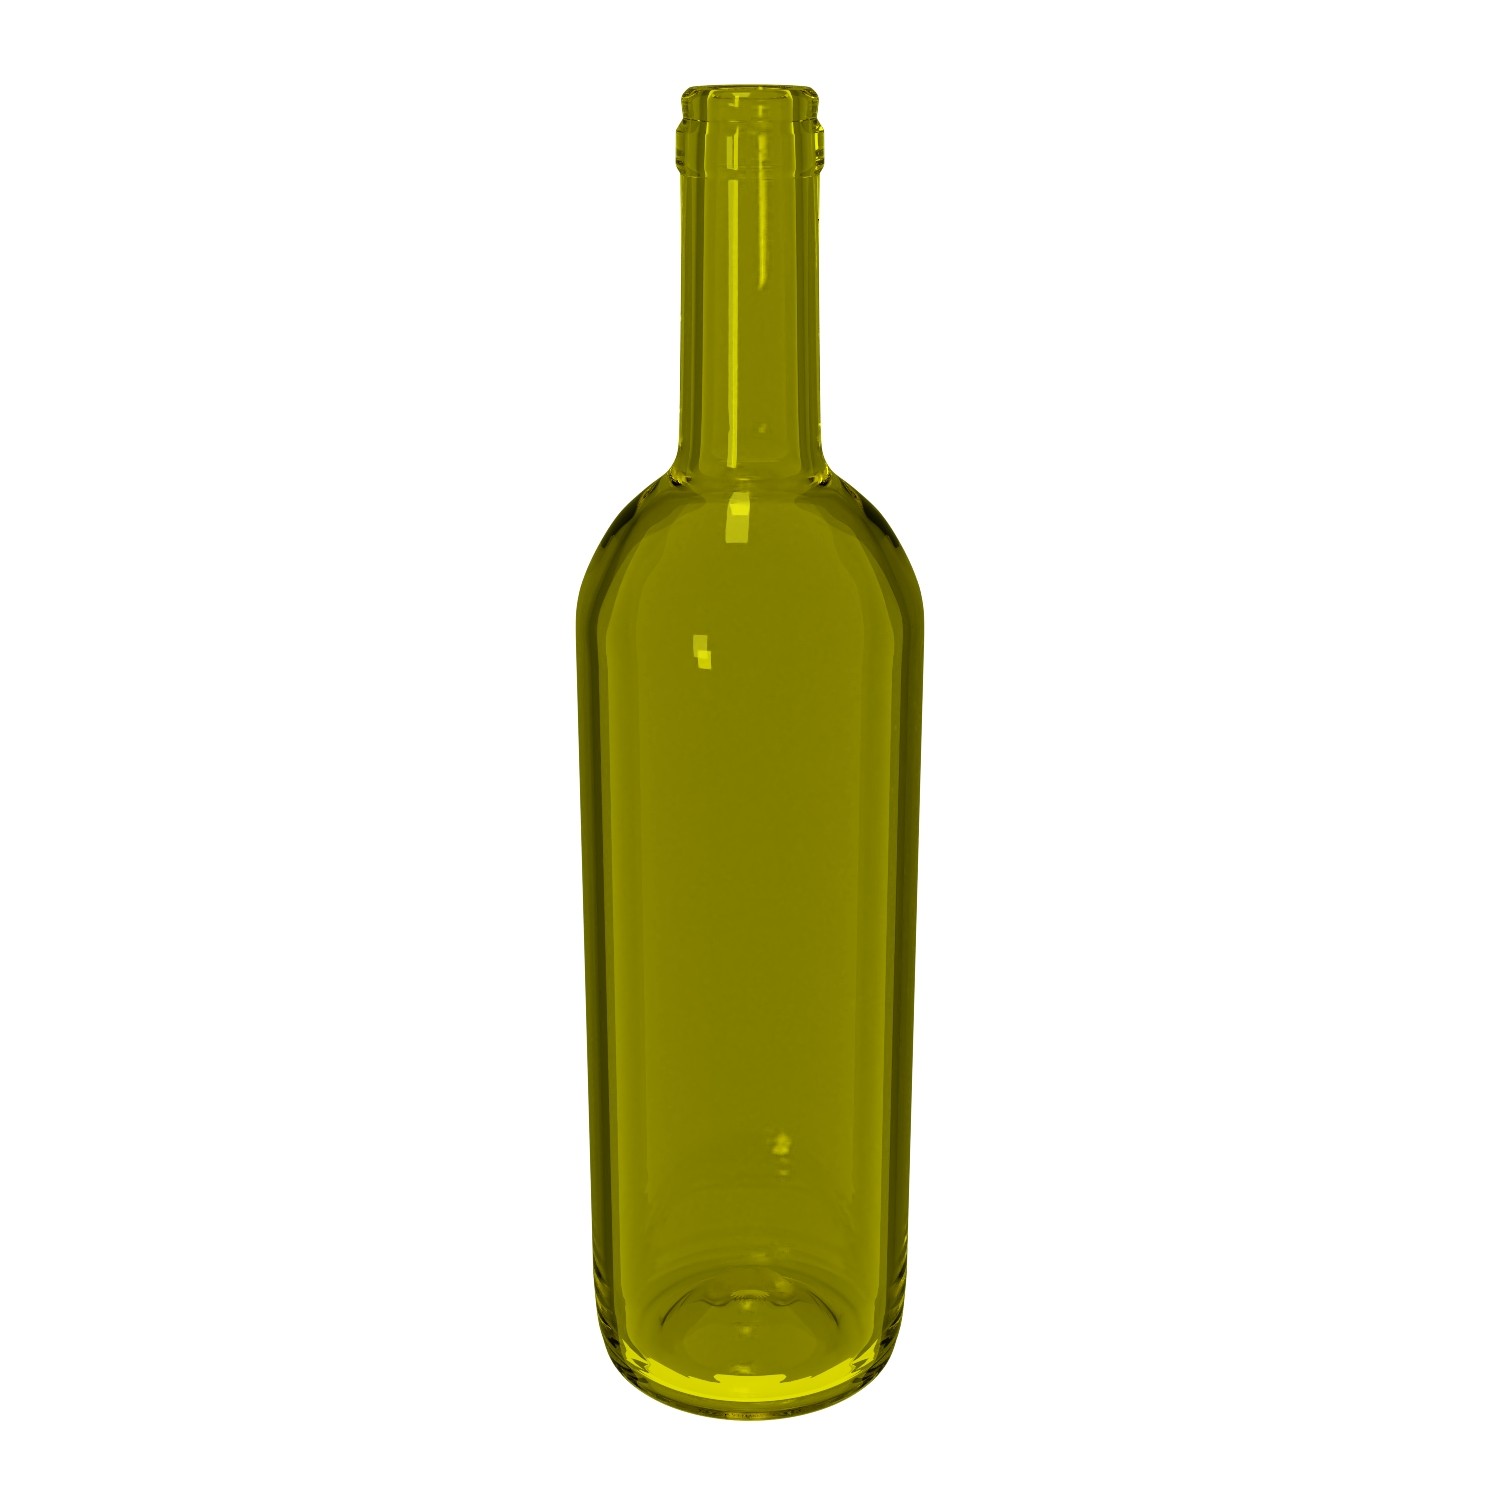 Szklana butelka uznana przez 95% badanych za najlepsze opakowanie do wina